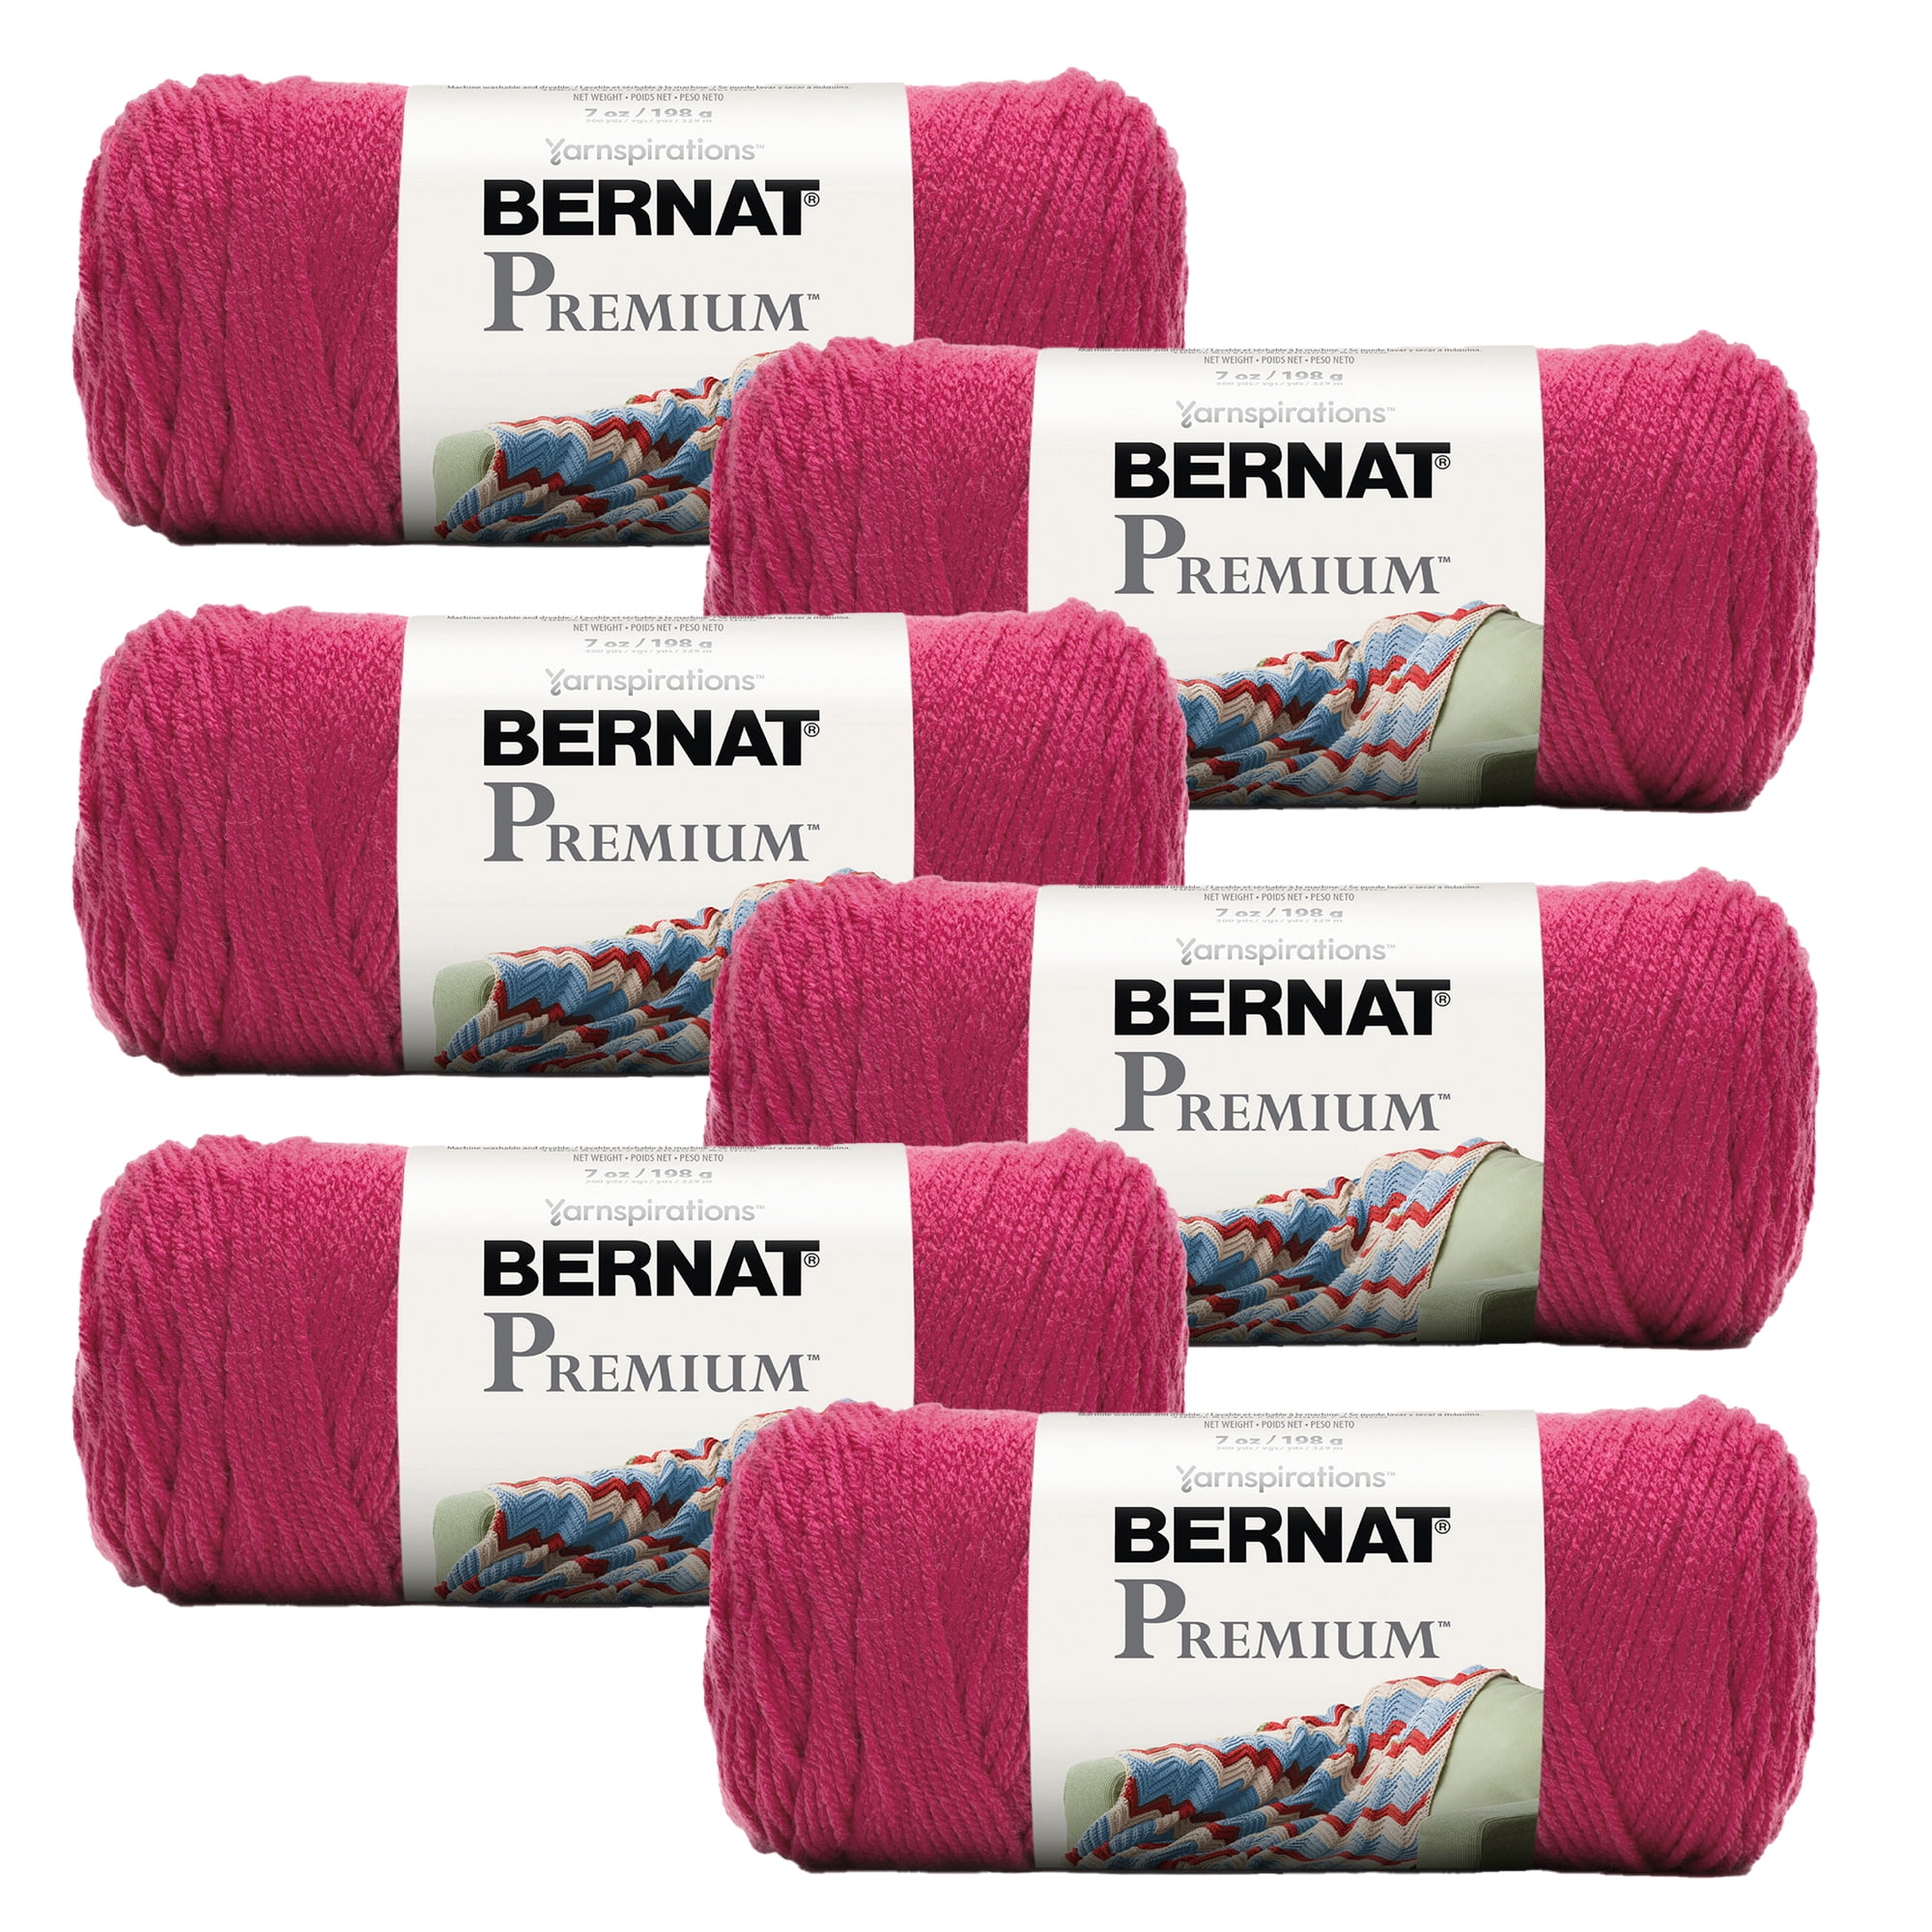 Bernat® Forever Fleece™ #6 Super Bulky Polyester Yarn, Leisure Teal  9.9oz/280g, 194 Yards (2 Pack) 